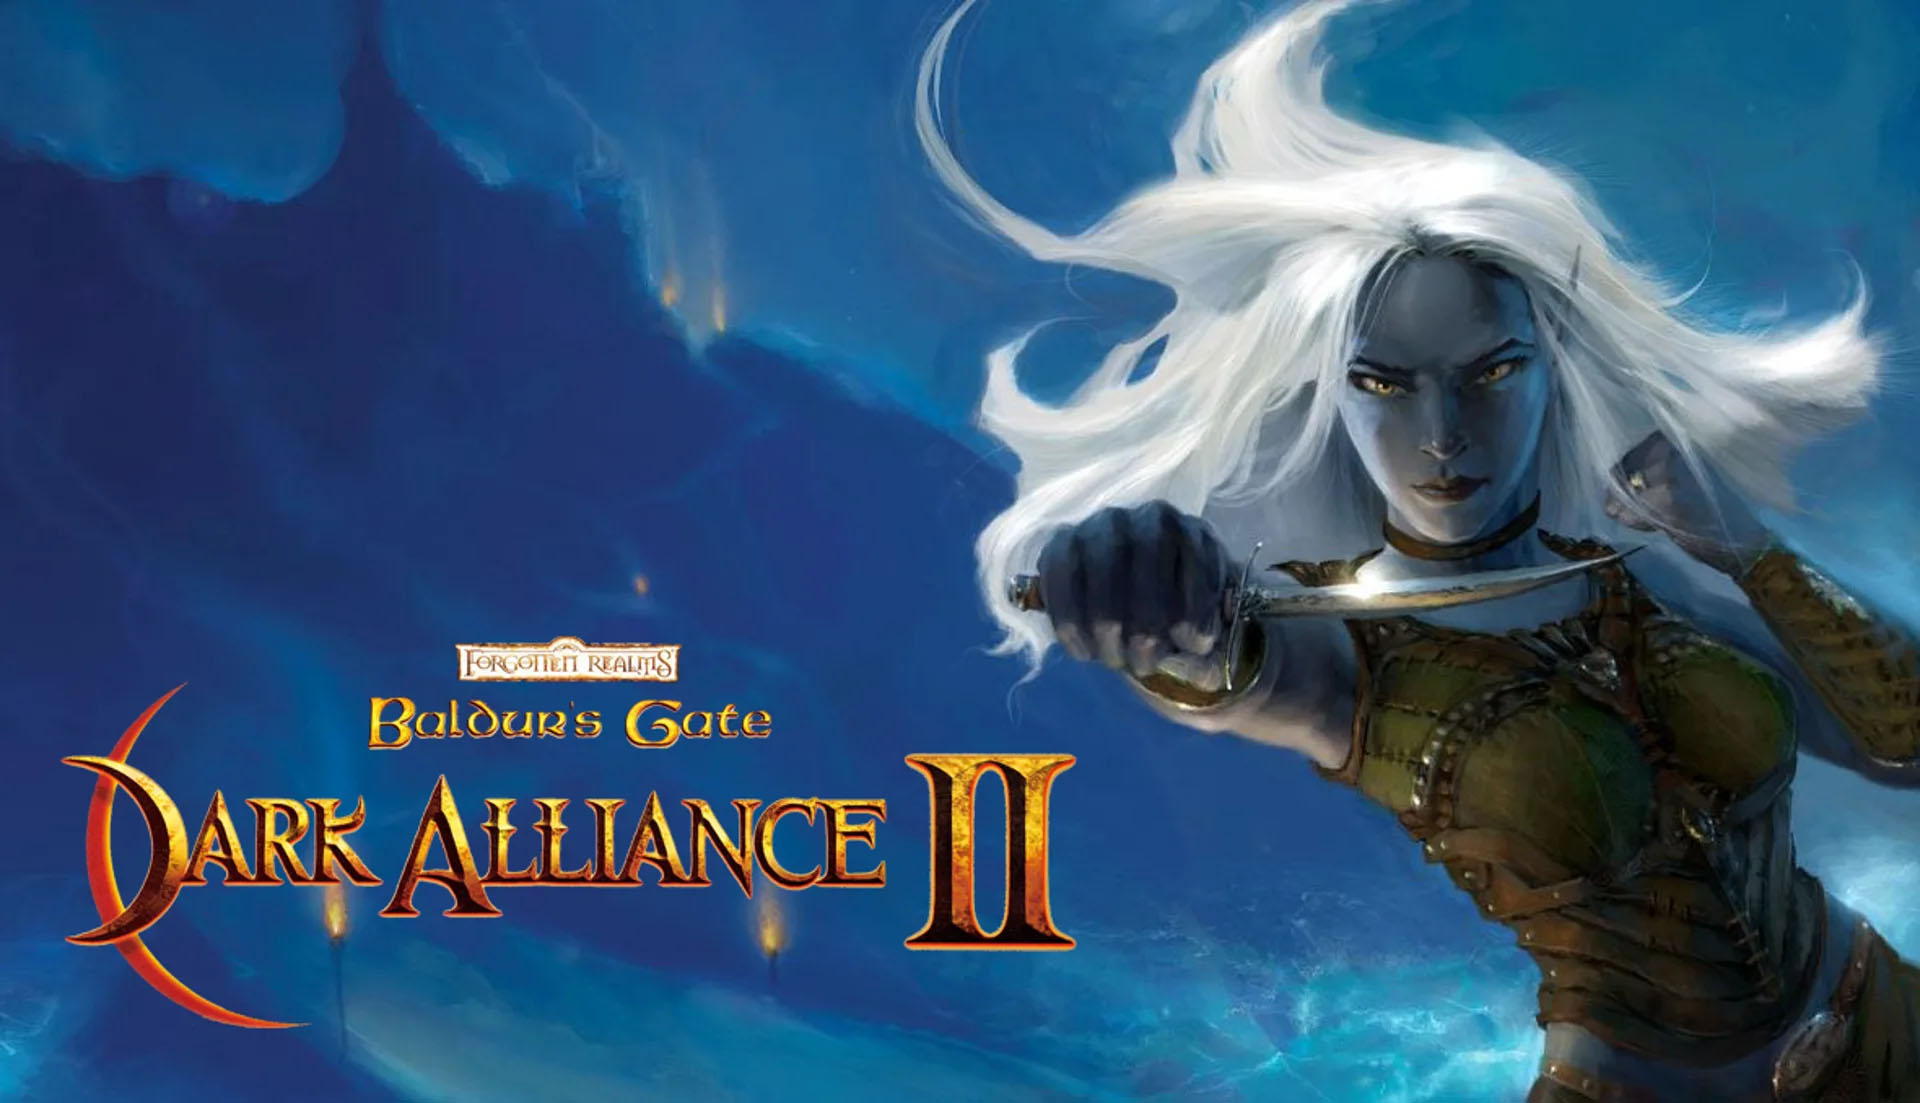 Baldur's Gate: Dark Alliance 2 Remastered will be released this summer